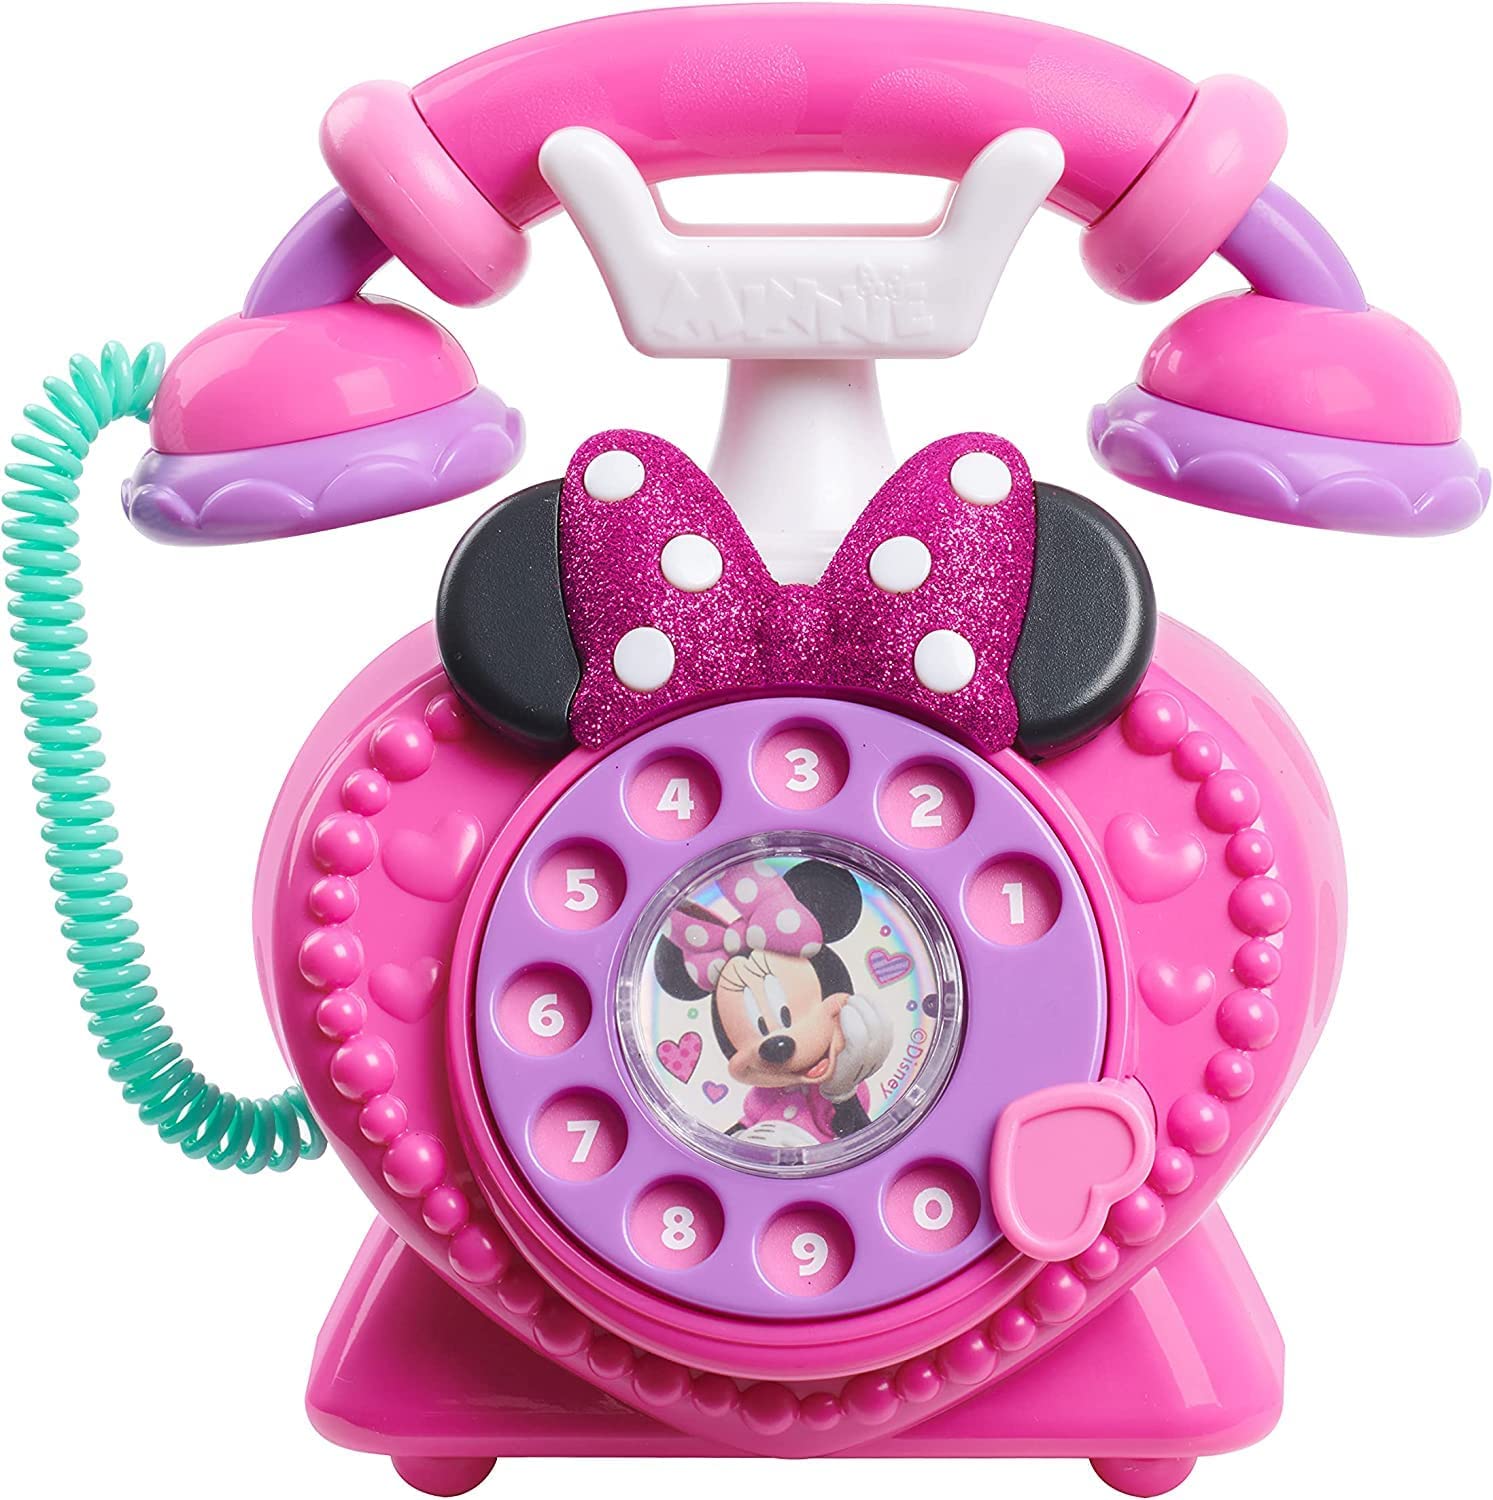 Disney ディズニー ミニーマウス 回転式 電話 リボン かわいい おもちゃ 女の子 ままごと サウンド ライト [並行輸入品]画像